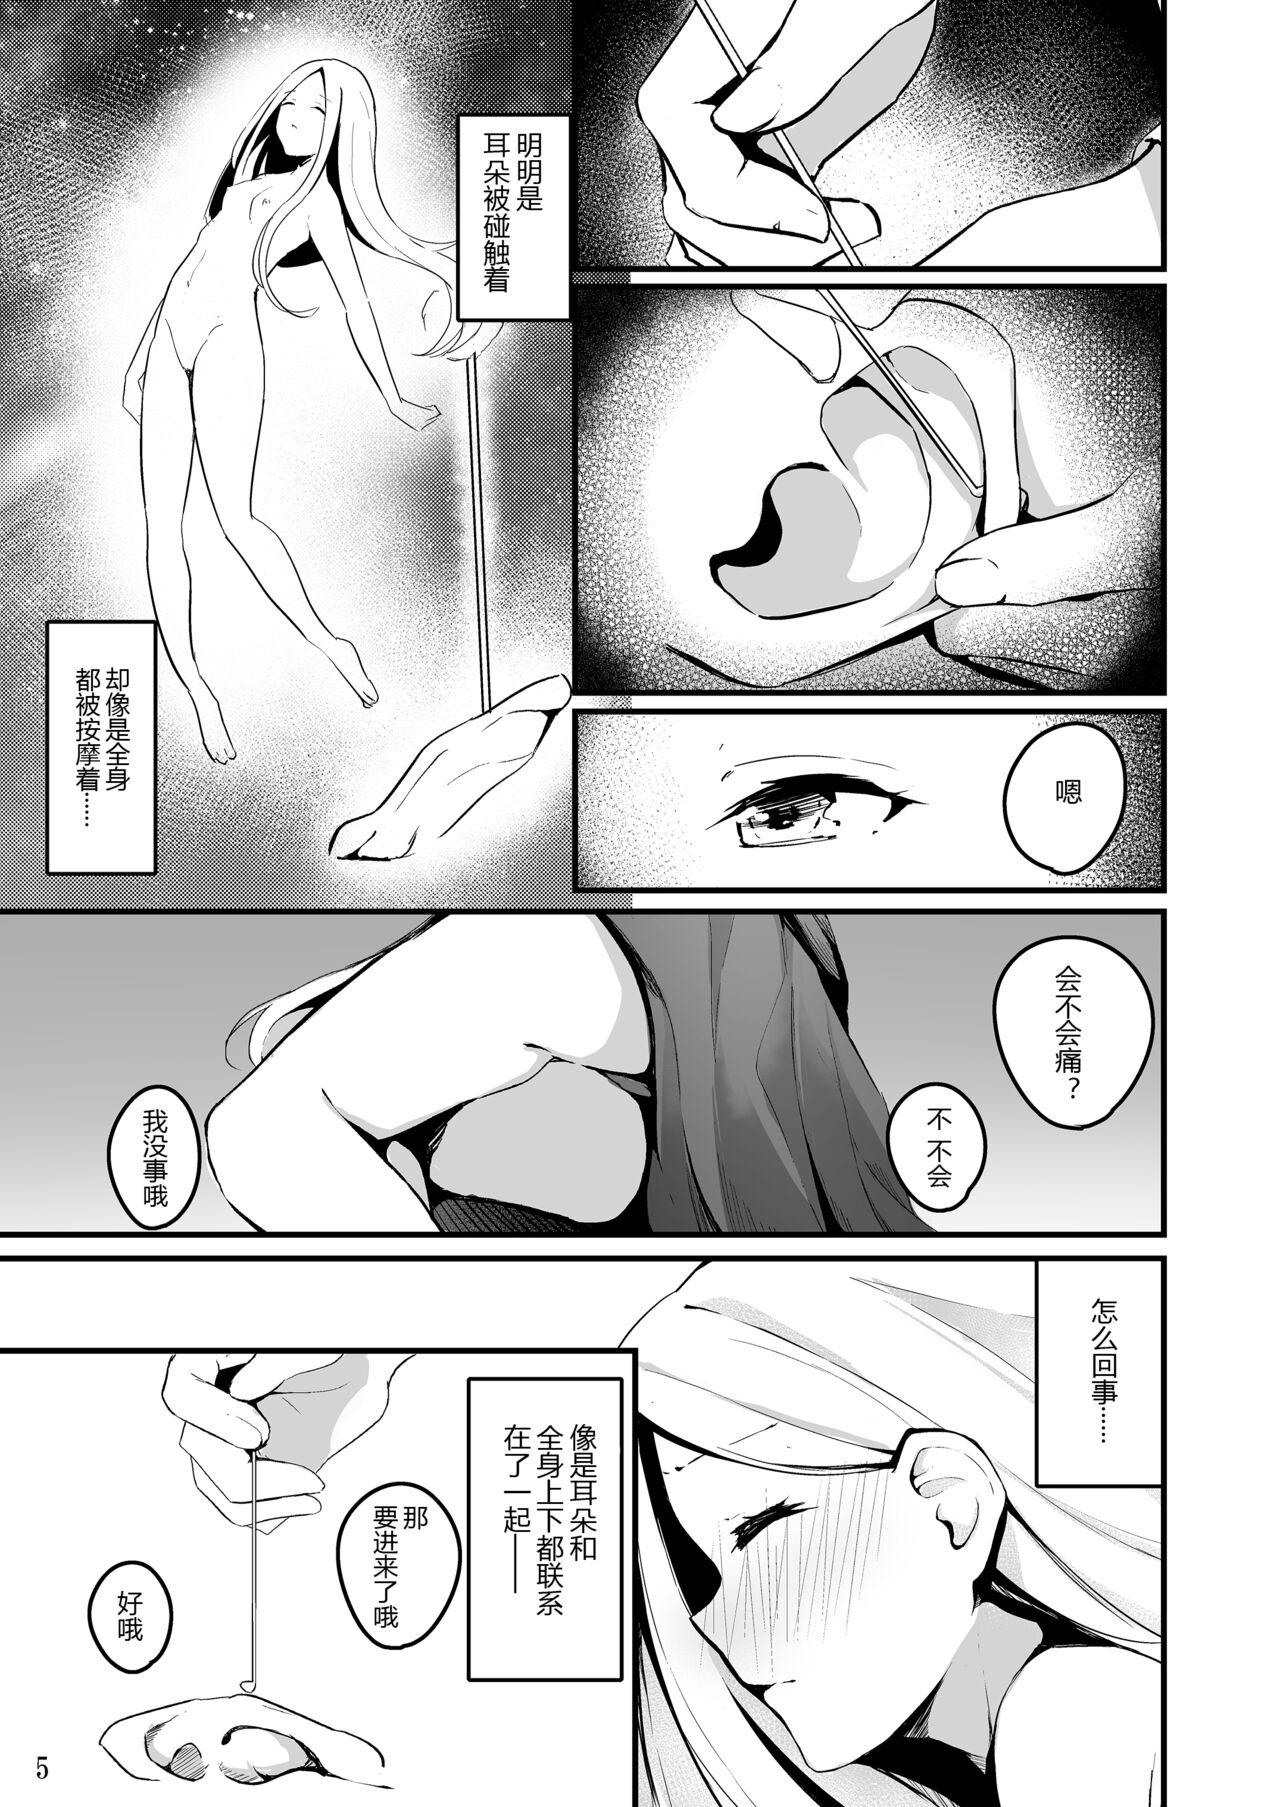 Passivo Koyoi wa Tsuki o Nagamete Mimikaki demo Shite Watashi no Hiza de Nemasen ka - Fate grand order Chile - Page 9